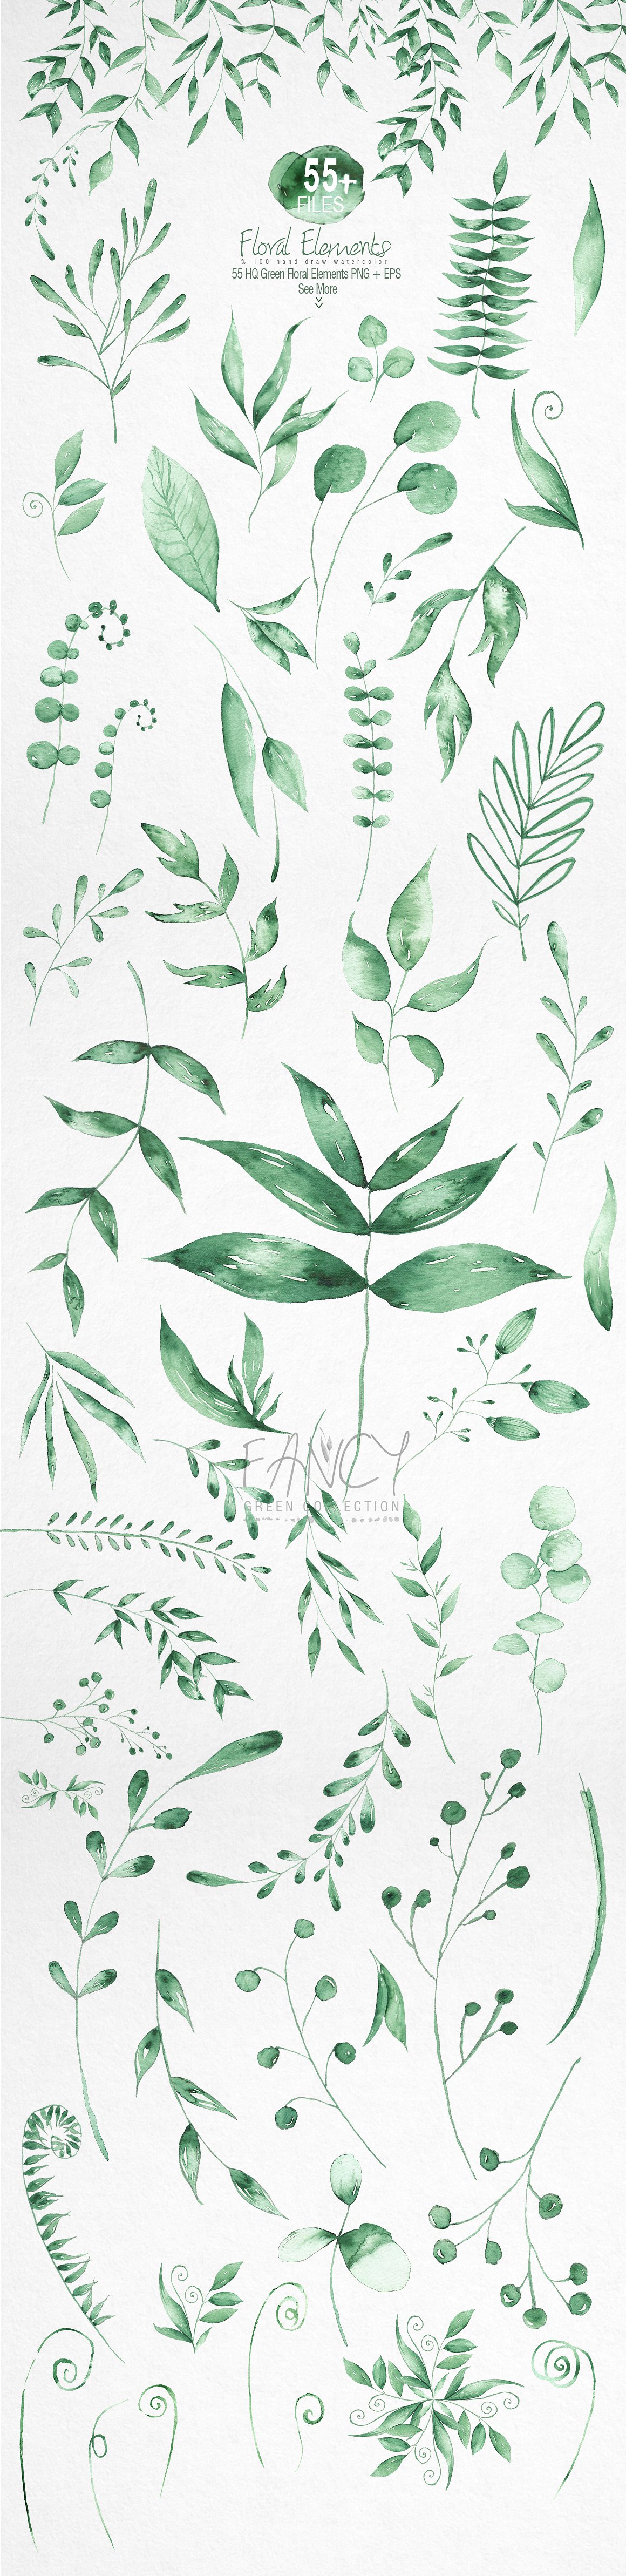 珍藏版春季手绘绿色植物素材包插图(1)